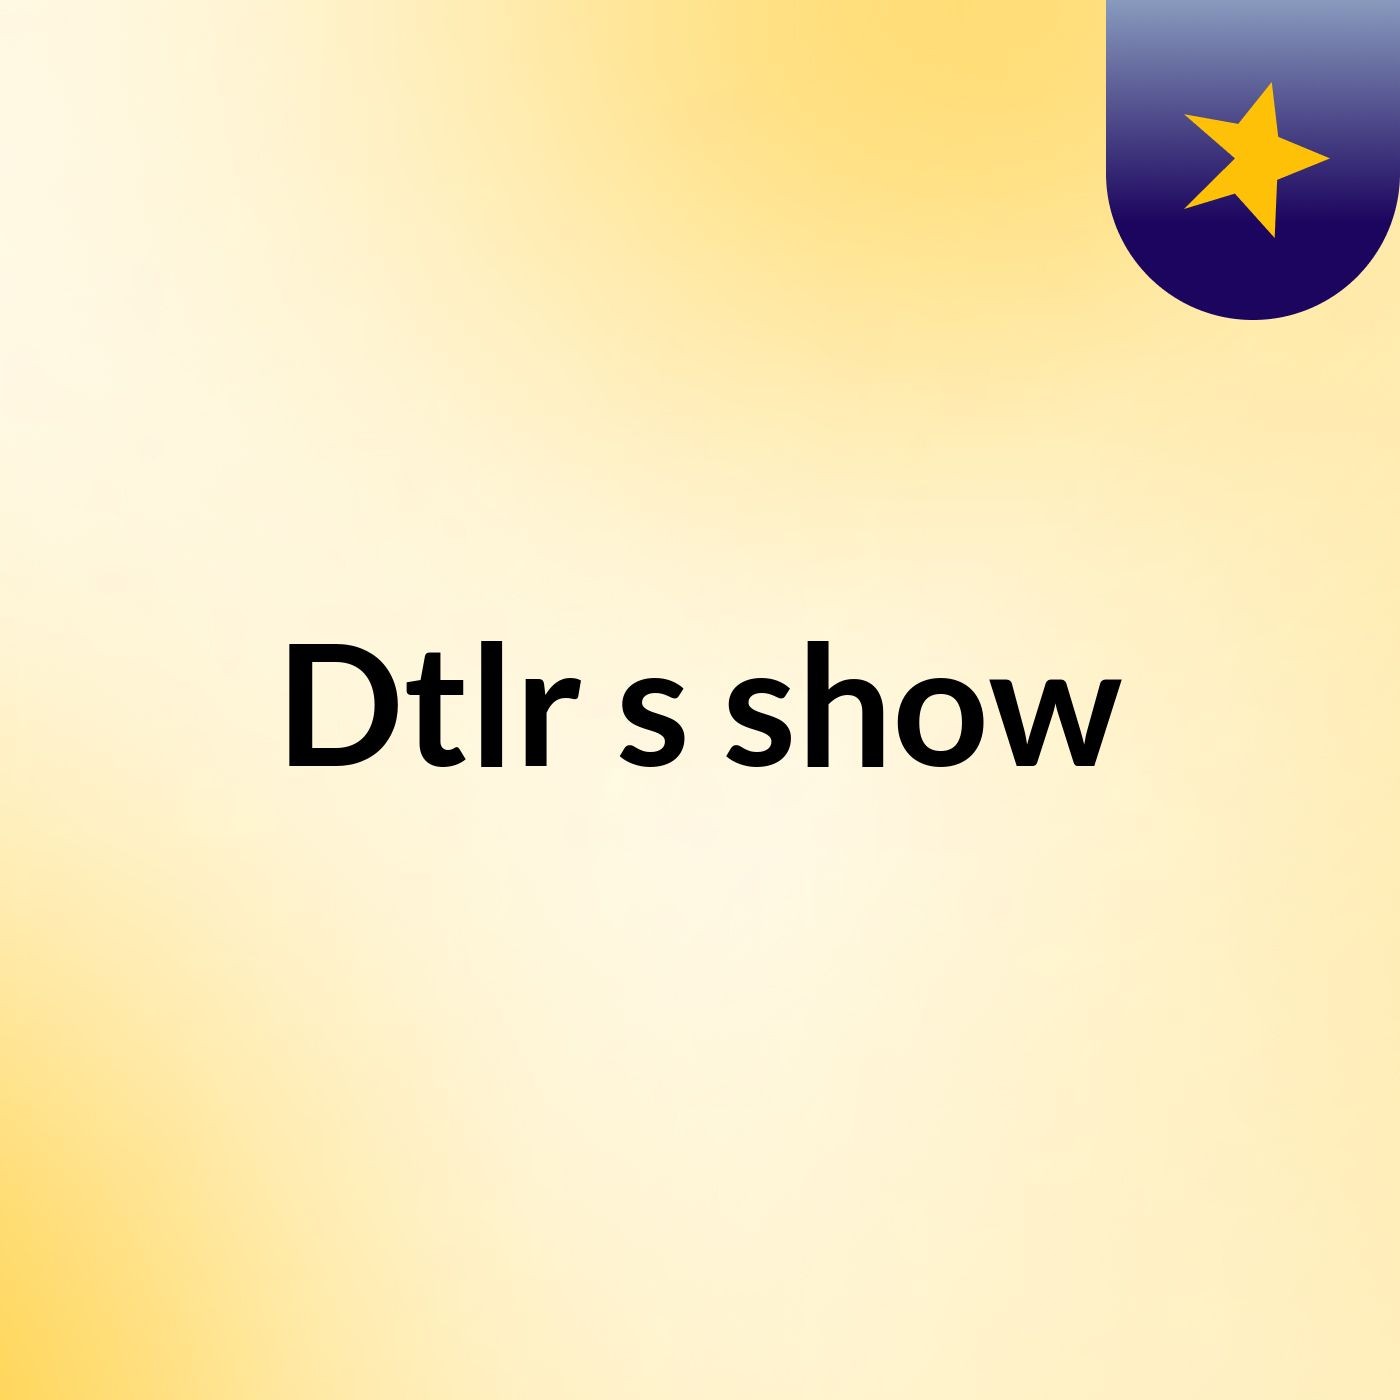 Dtlr's show